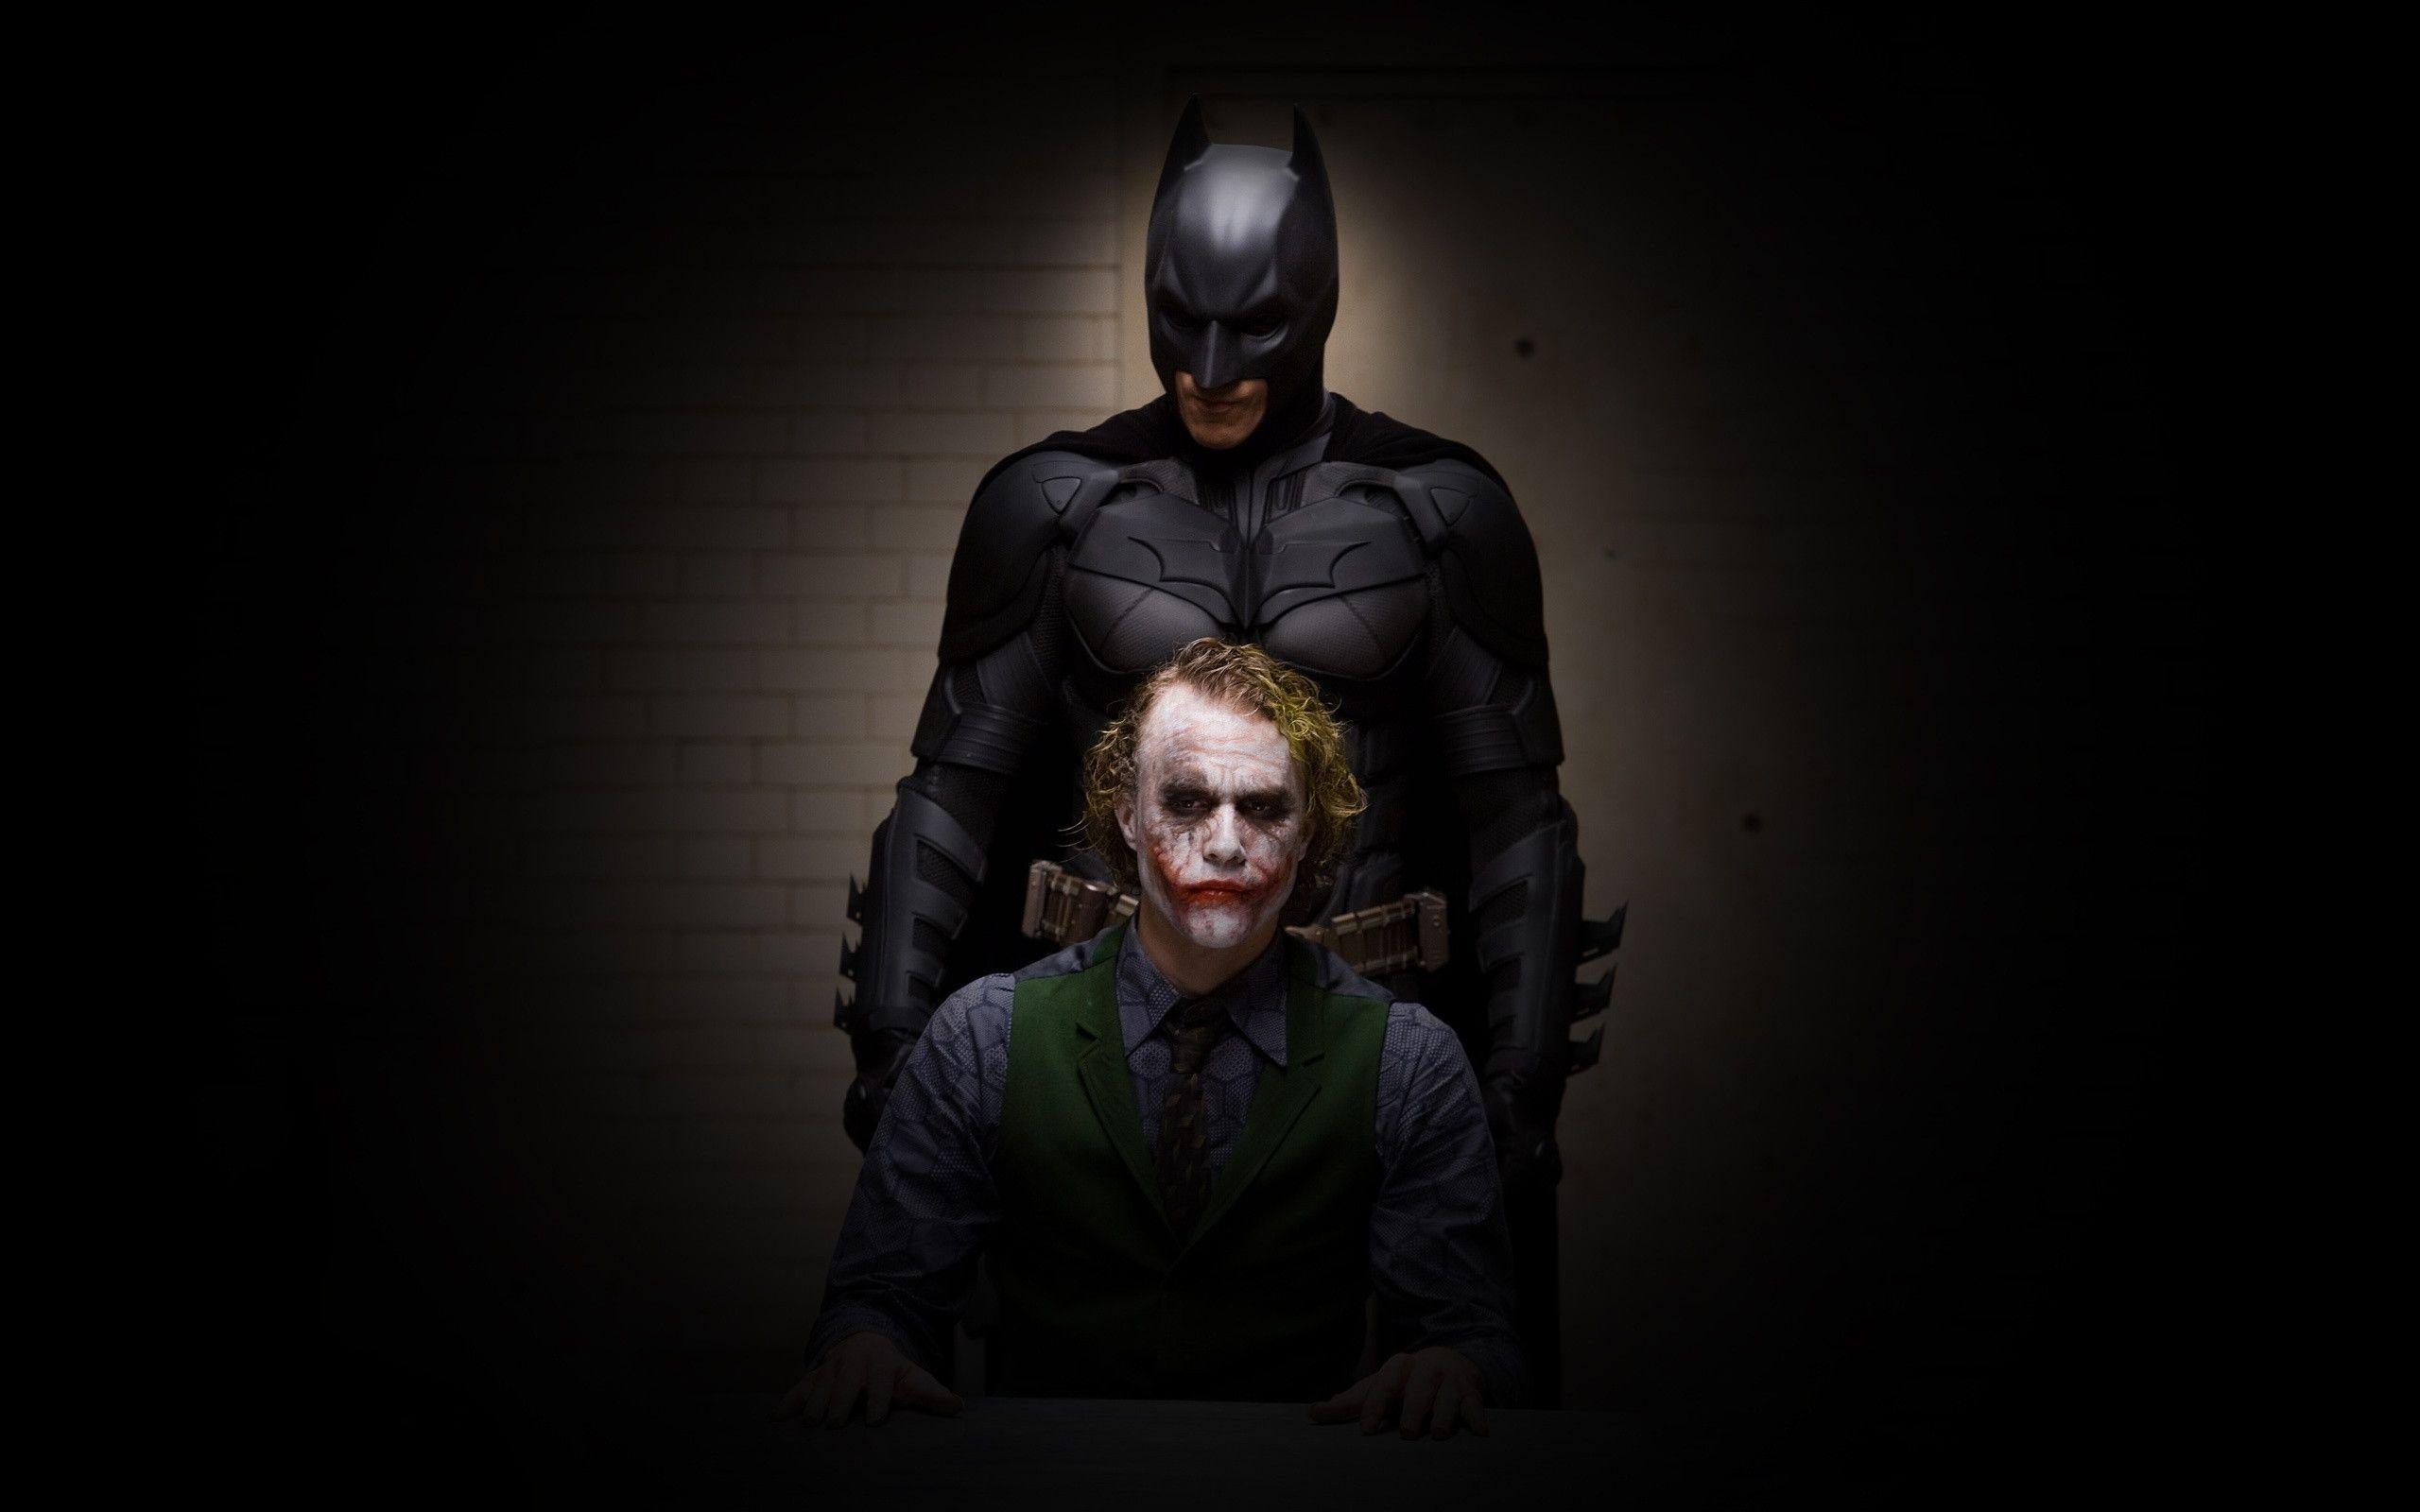 Wallpaper Batman Joker Dark The Dark Knight image vector clip